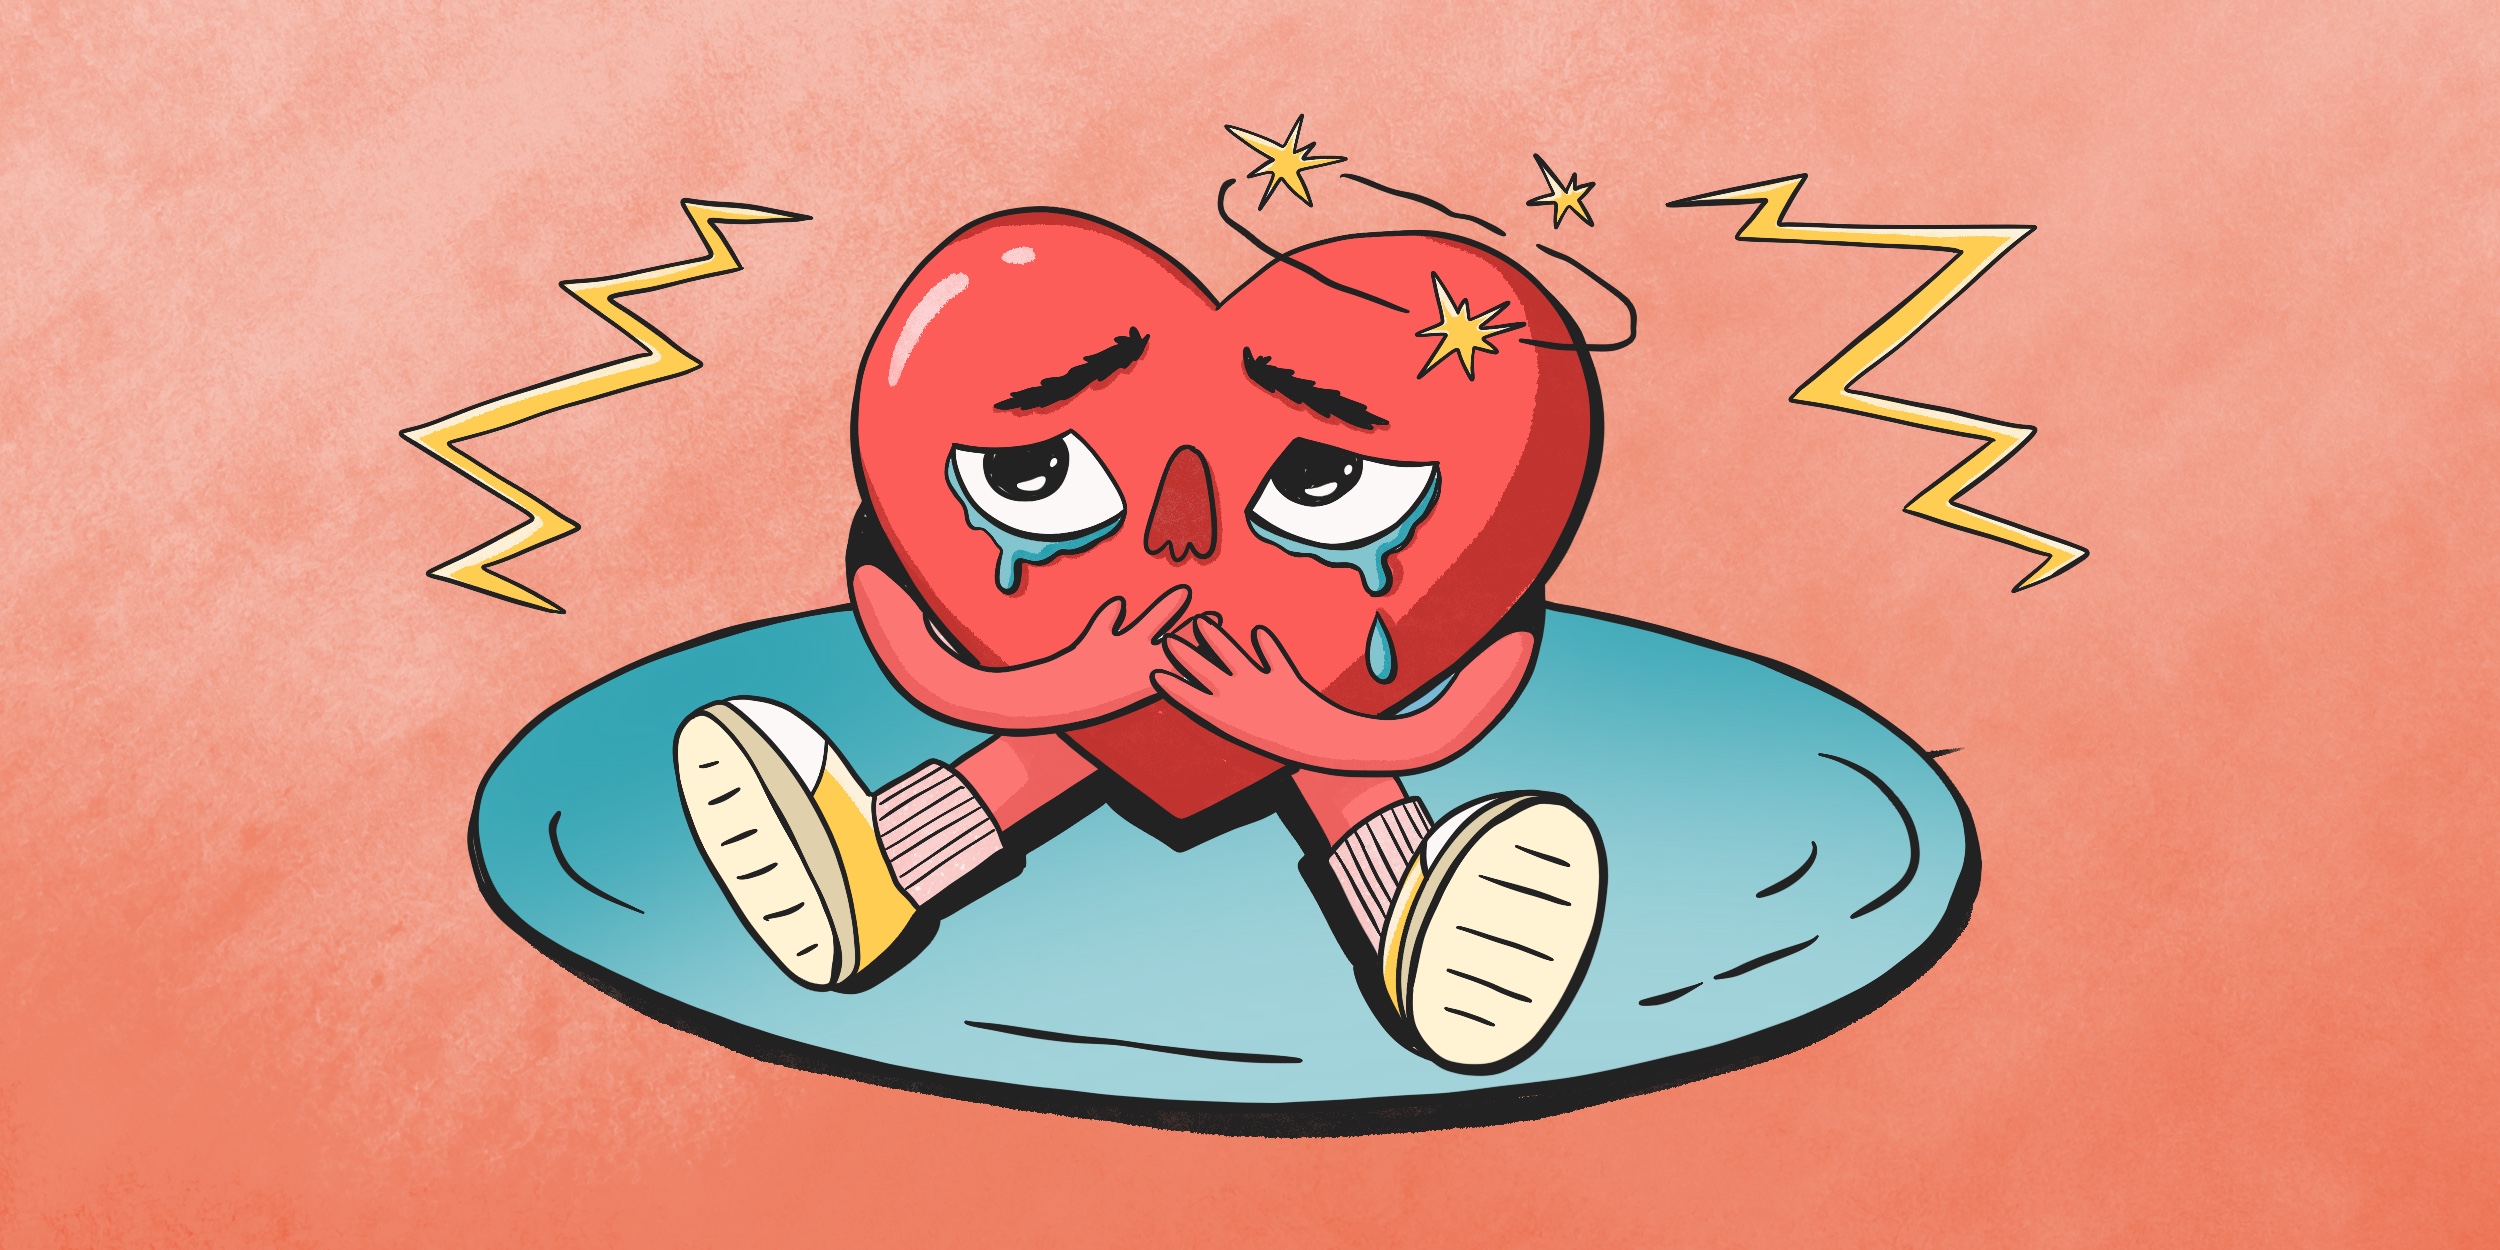 Как понять, что болит сердце? Рекомендации кардиолога